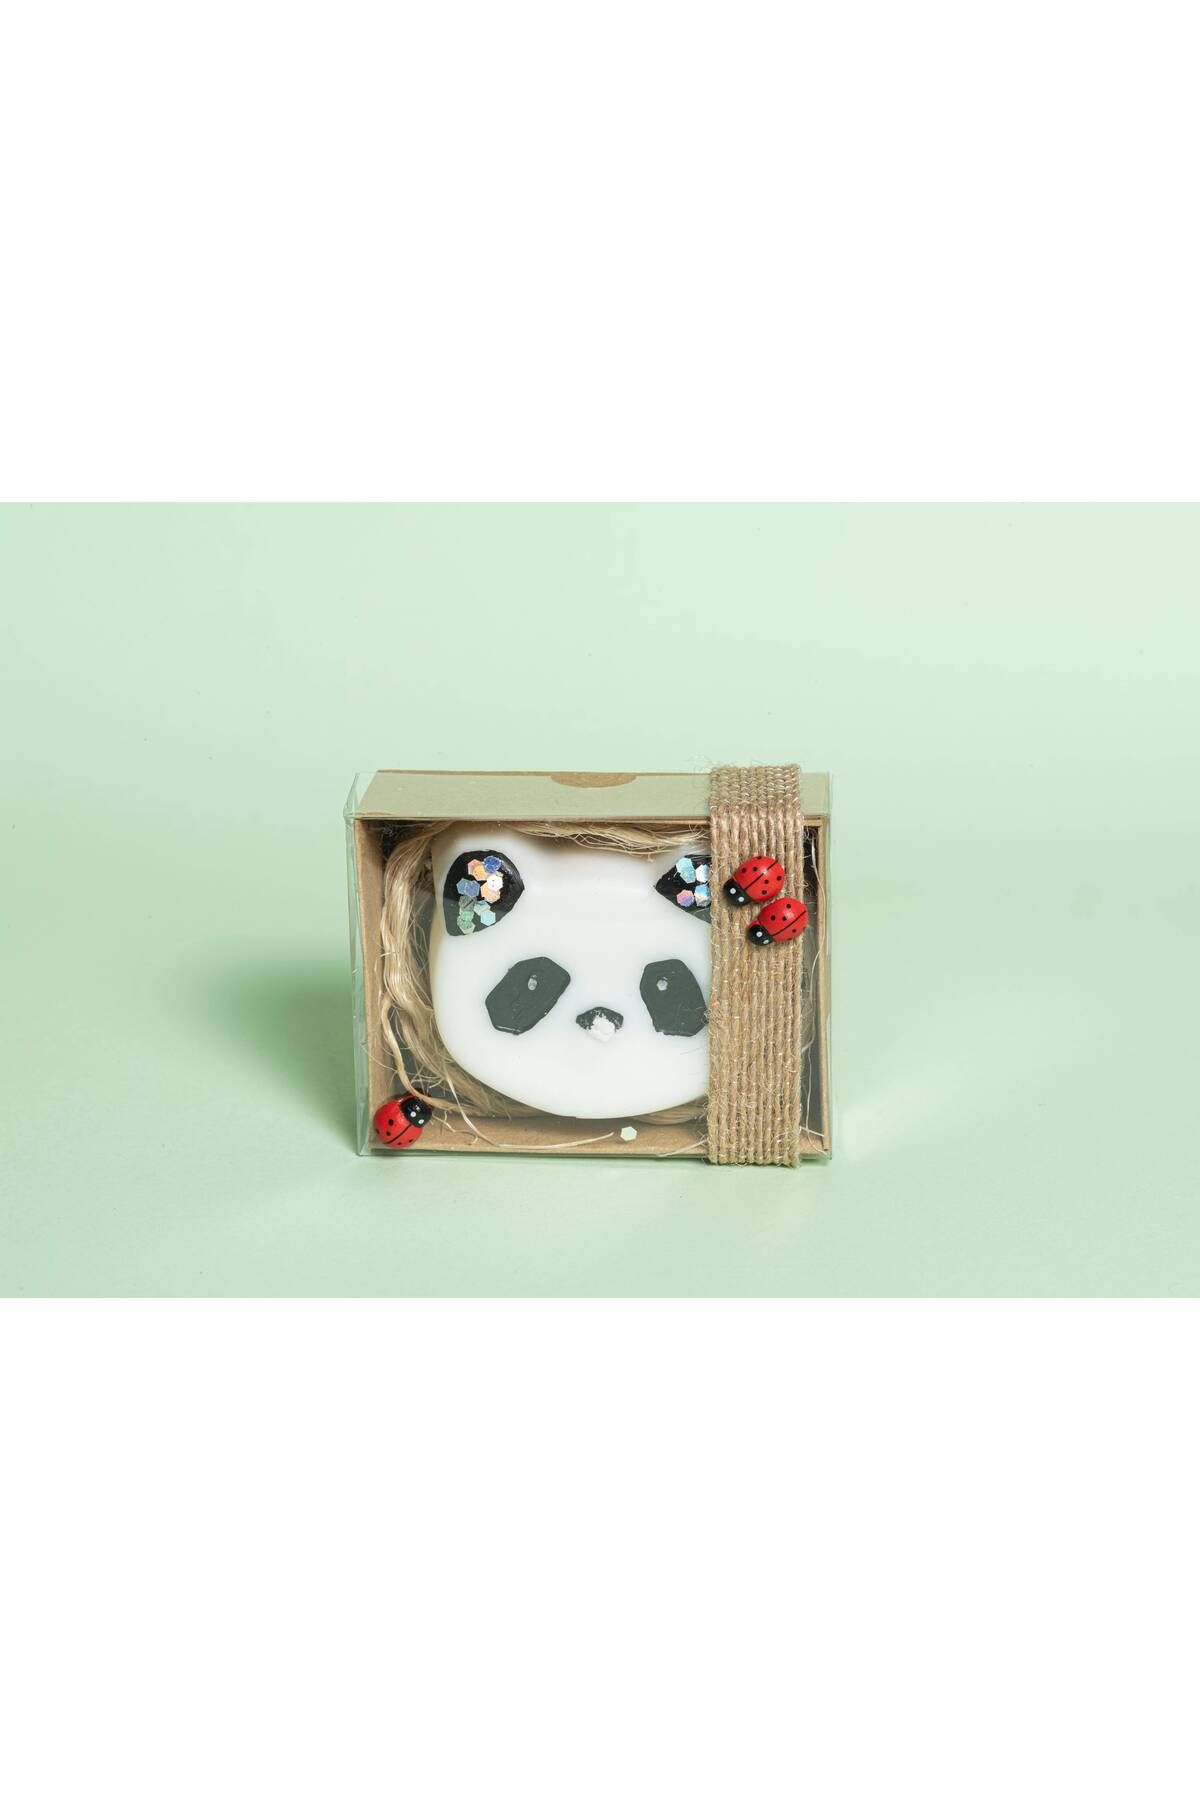 Bouquet De Lumieres Kokulu Panda Mum 10 ADET / Baby Shower, Doğum Günü, Cinsiyet Partisi Hediyeliği